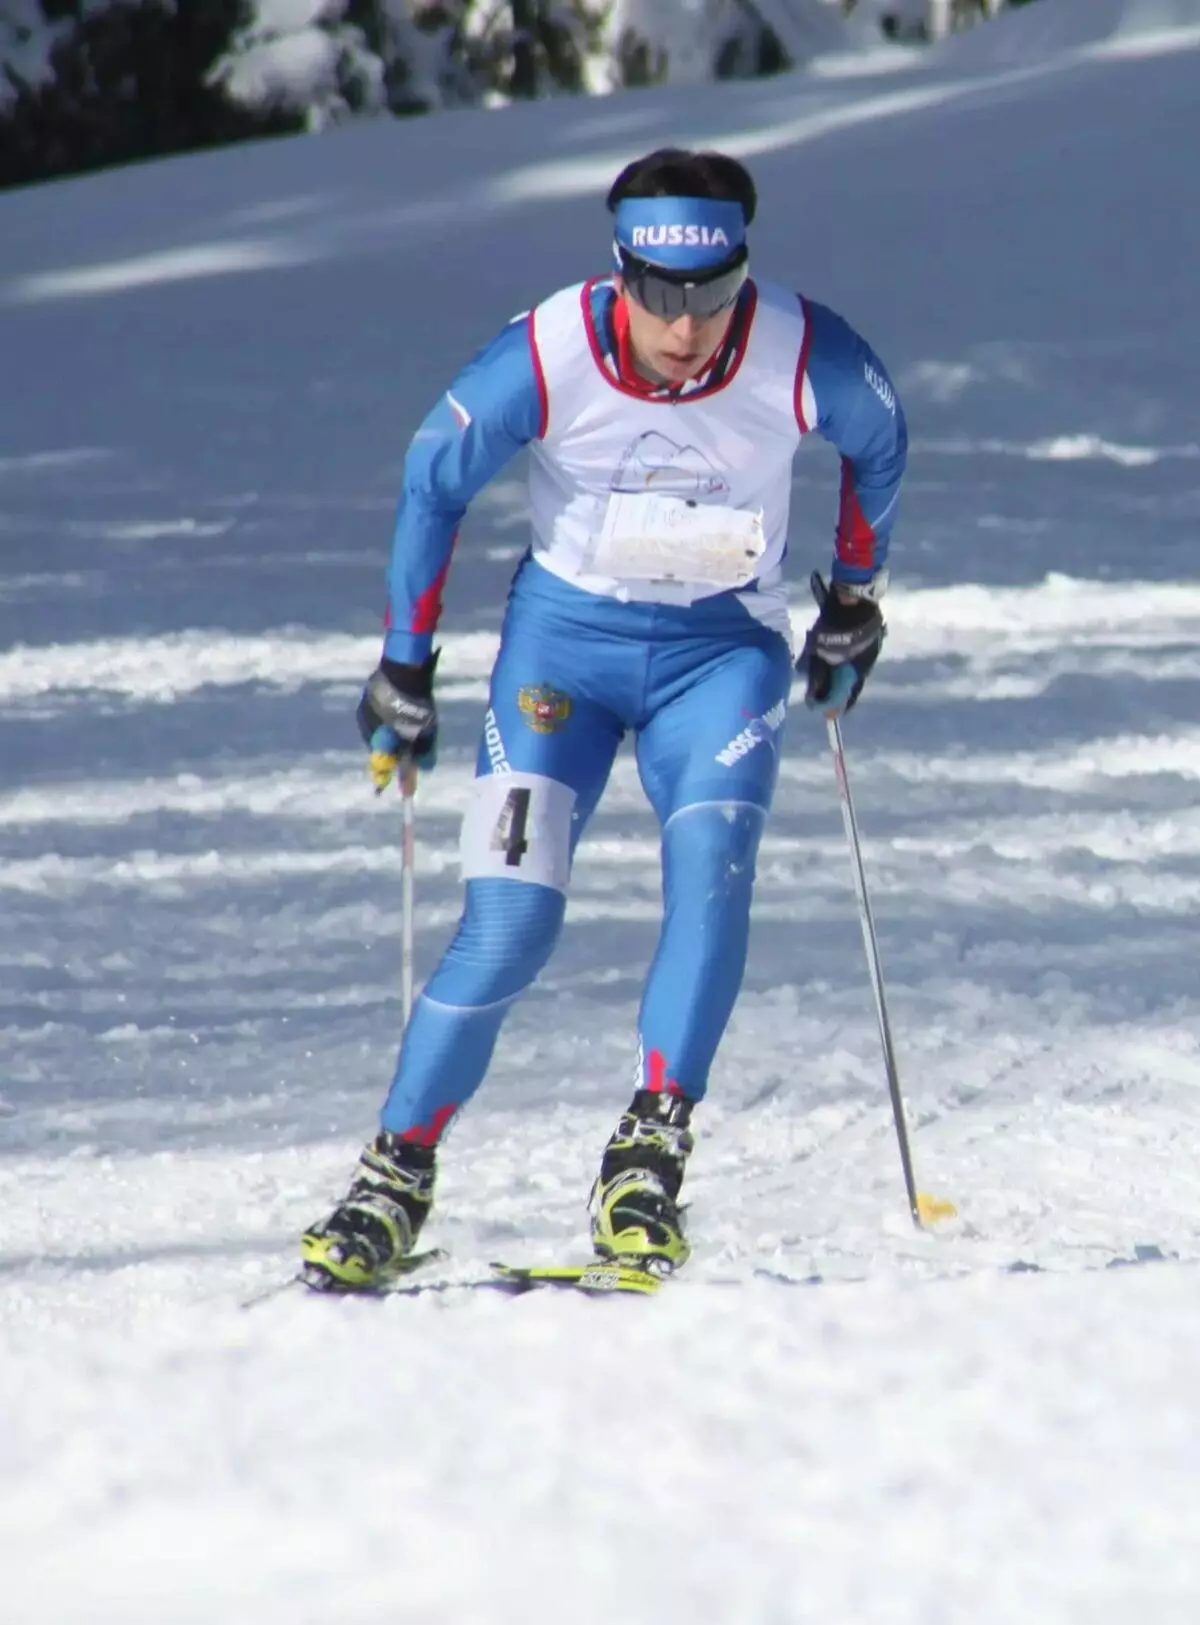 Skihandsker (61 billeder): Kvinders ski modeller til sport, oversigt over populære mærker - Reysshe, Head, Salomon, Leki 15203_28